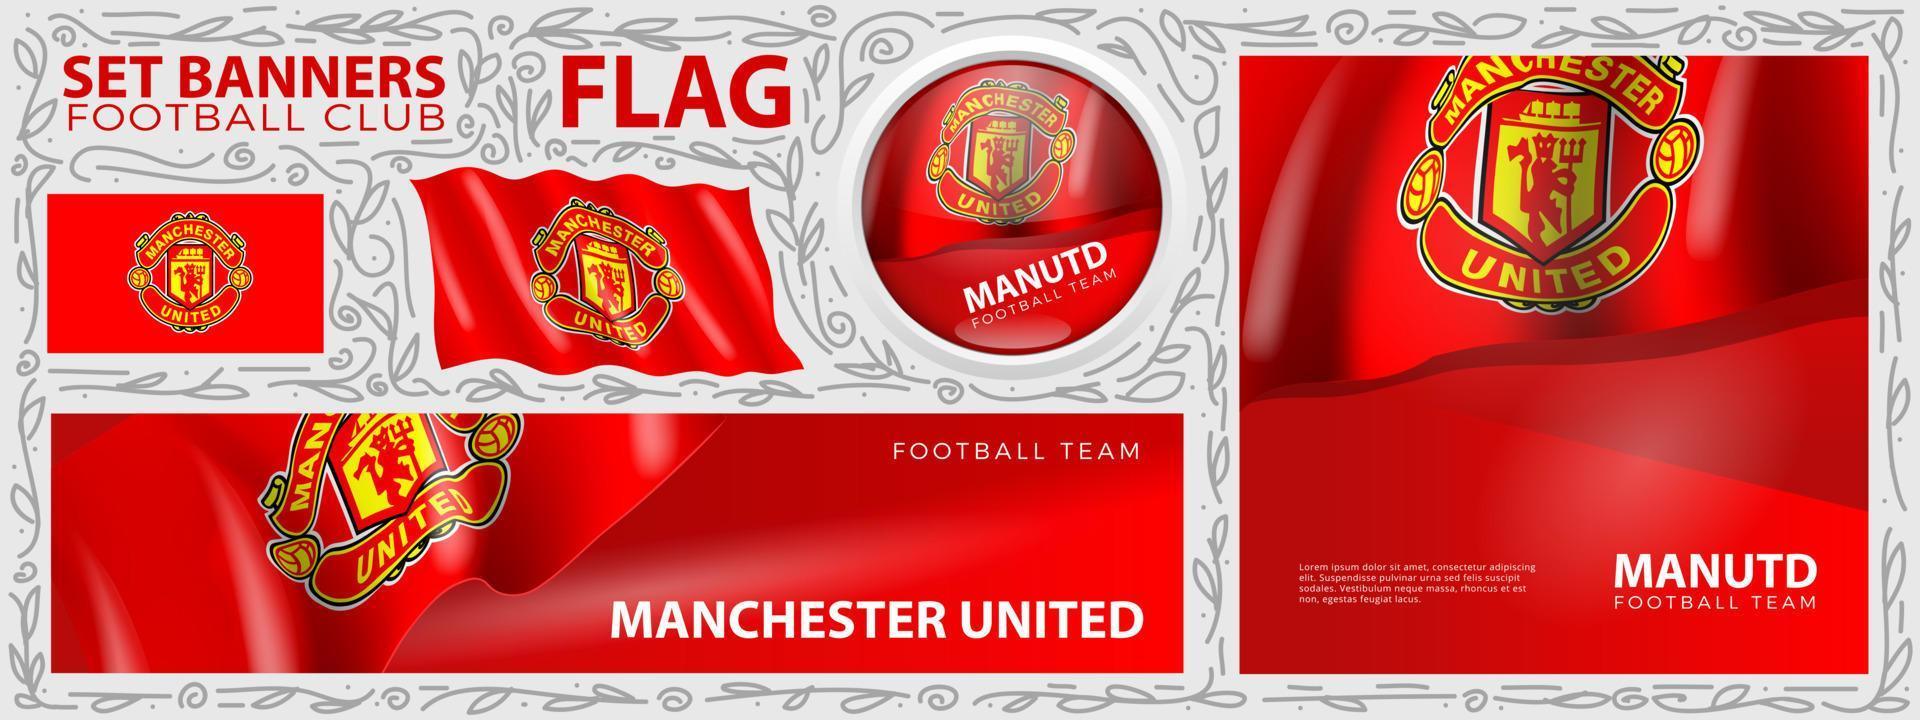 Manchester United-Flagge. Reihe von Bannern. grußkarte, banner, flyerdesign vektor